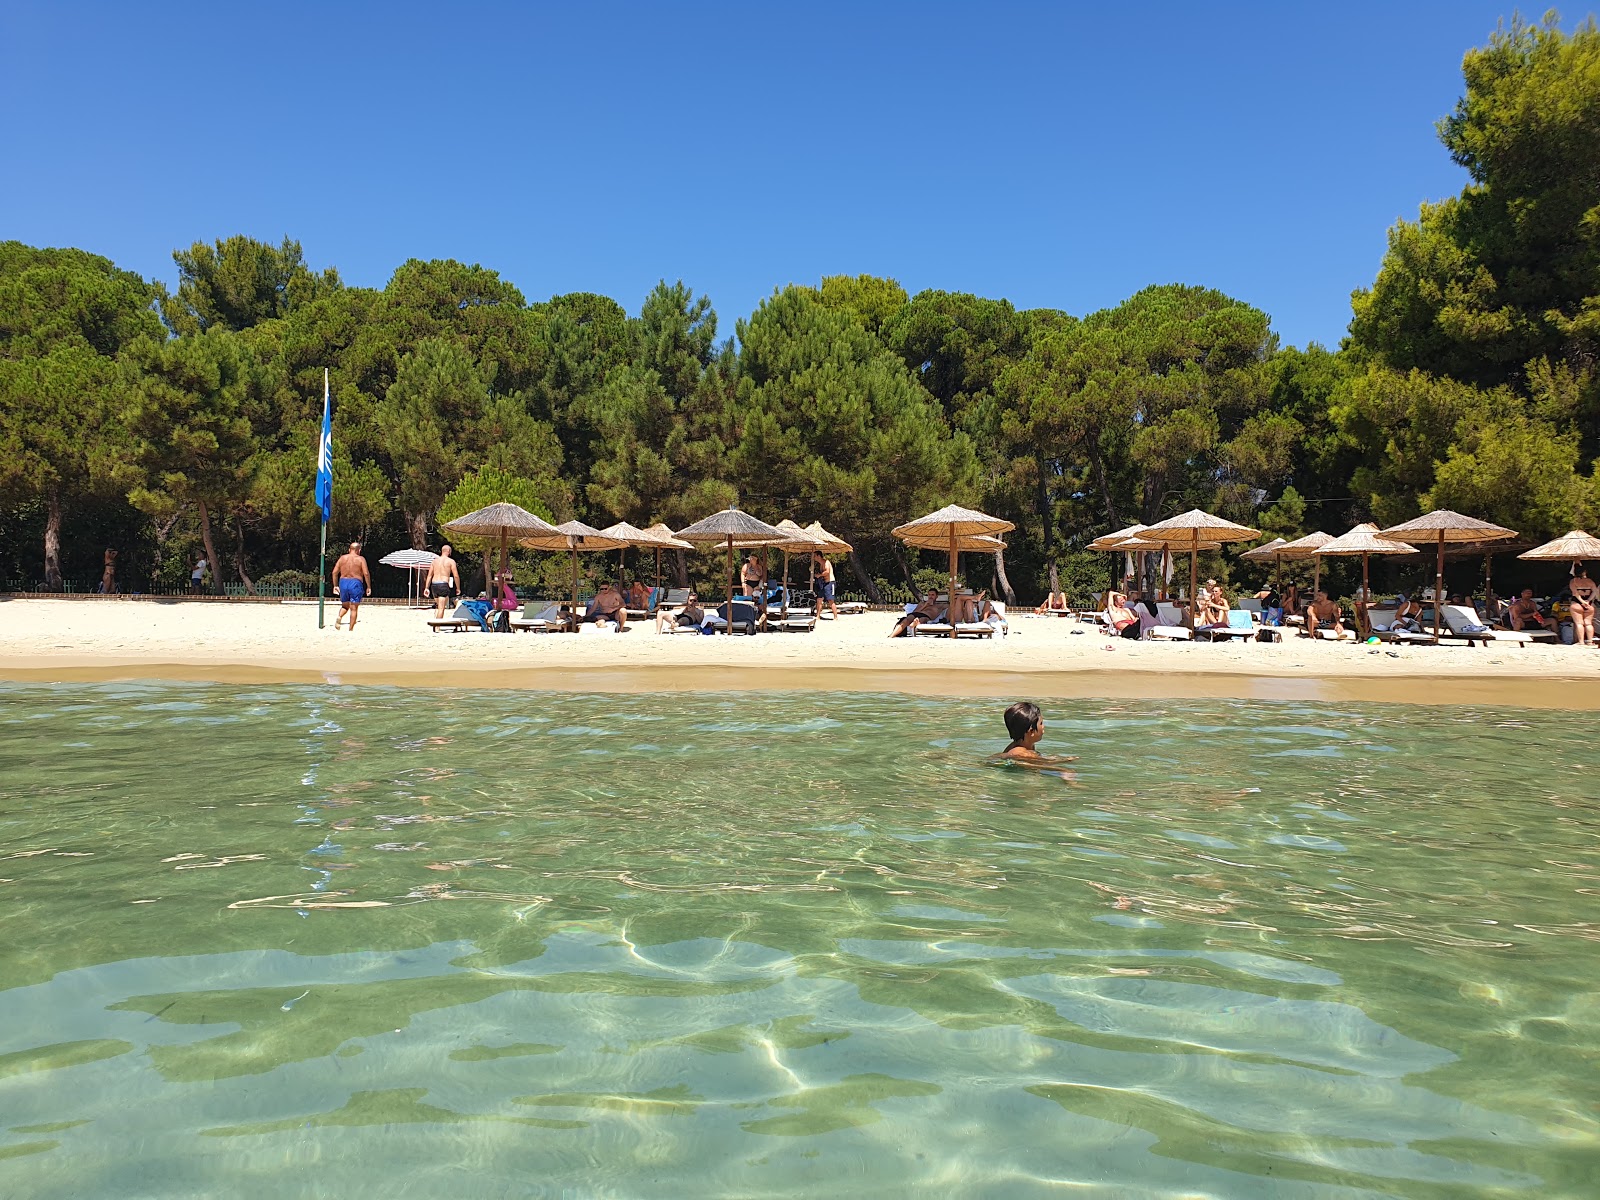 Zdjęcie Plaża Koukounaries - popularne miejsce wśród znawców relaksu